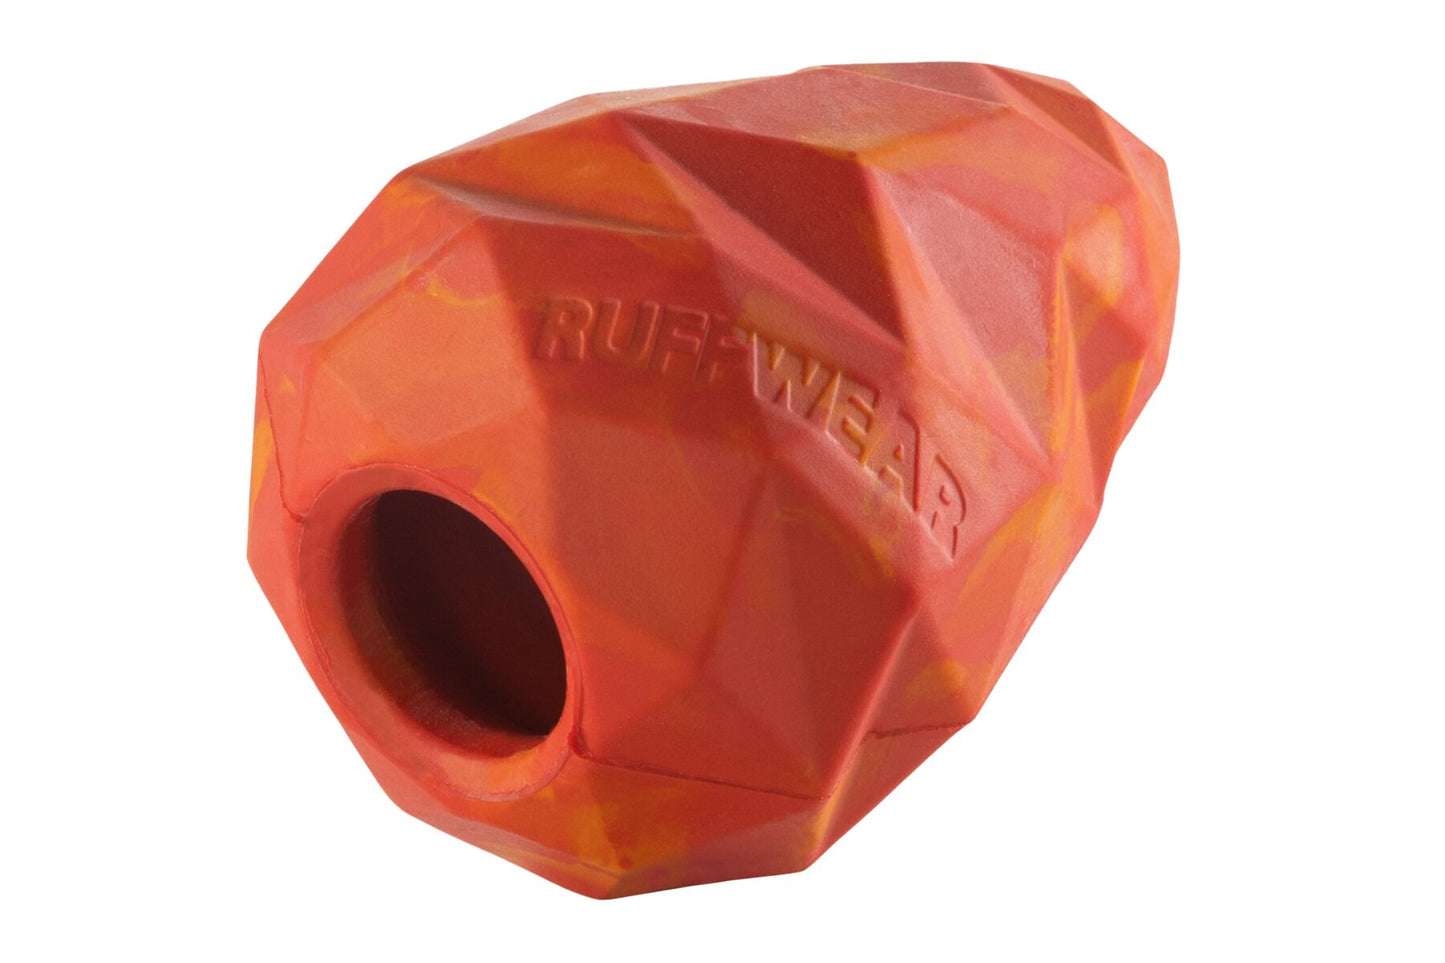 Ruffwear - Gnawt-a-Cone